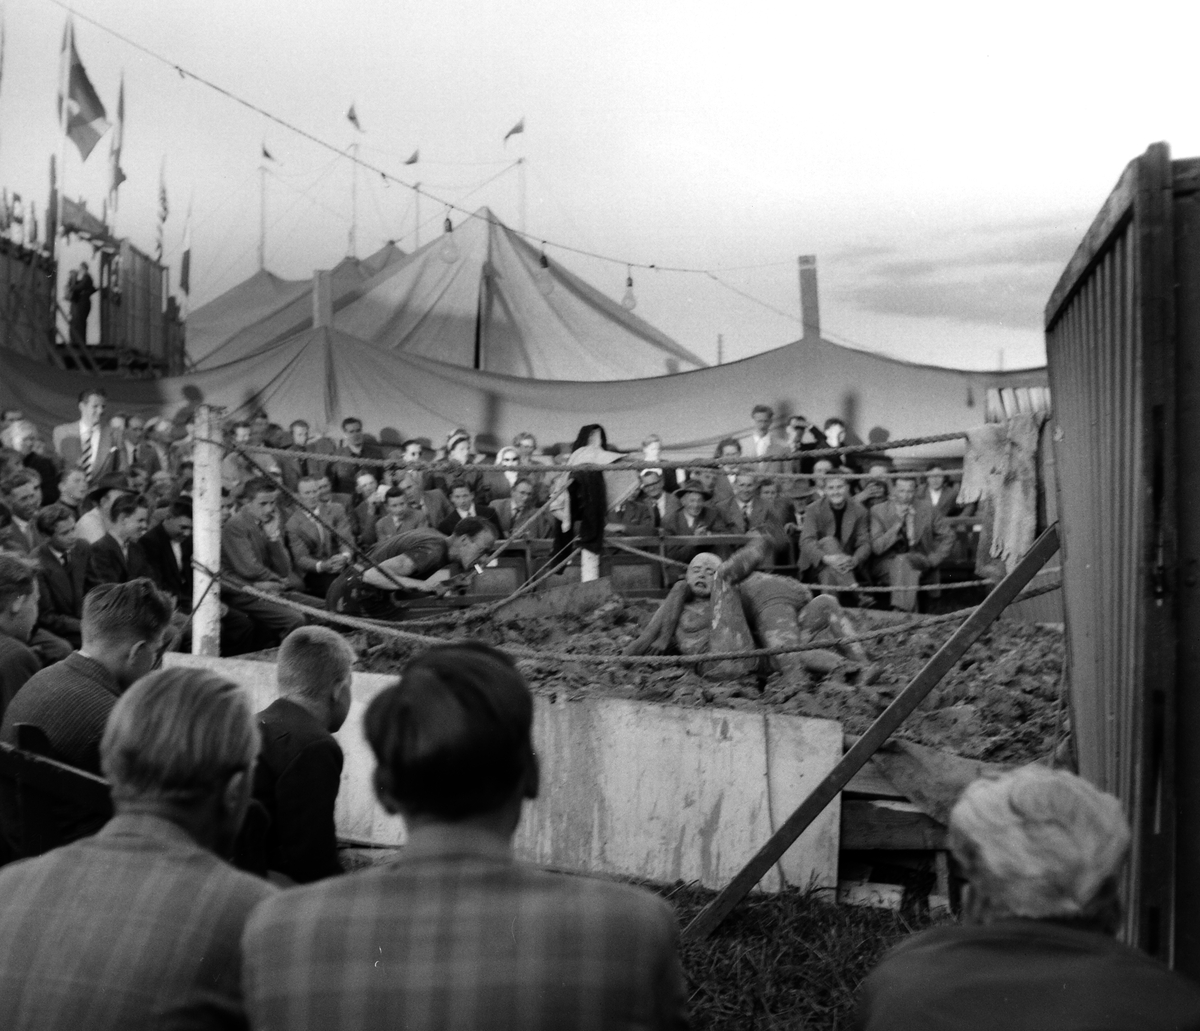 Skänninge marknad 1954.
Pressfotografier från 1950-1960-talet. Samtliga bilder är tagna i Östergötland, de flesta i Linköping.